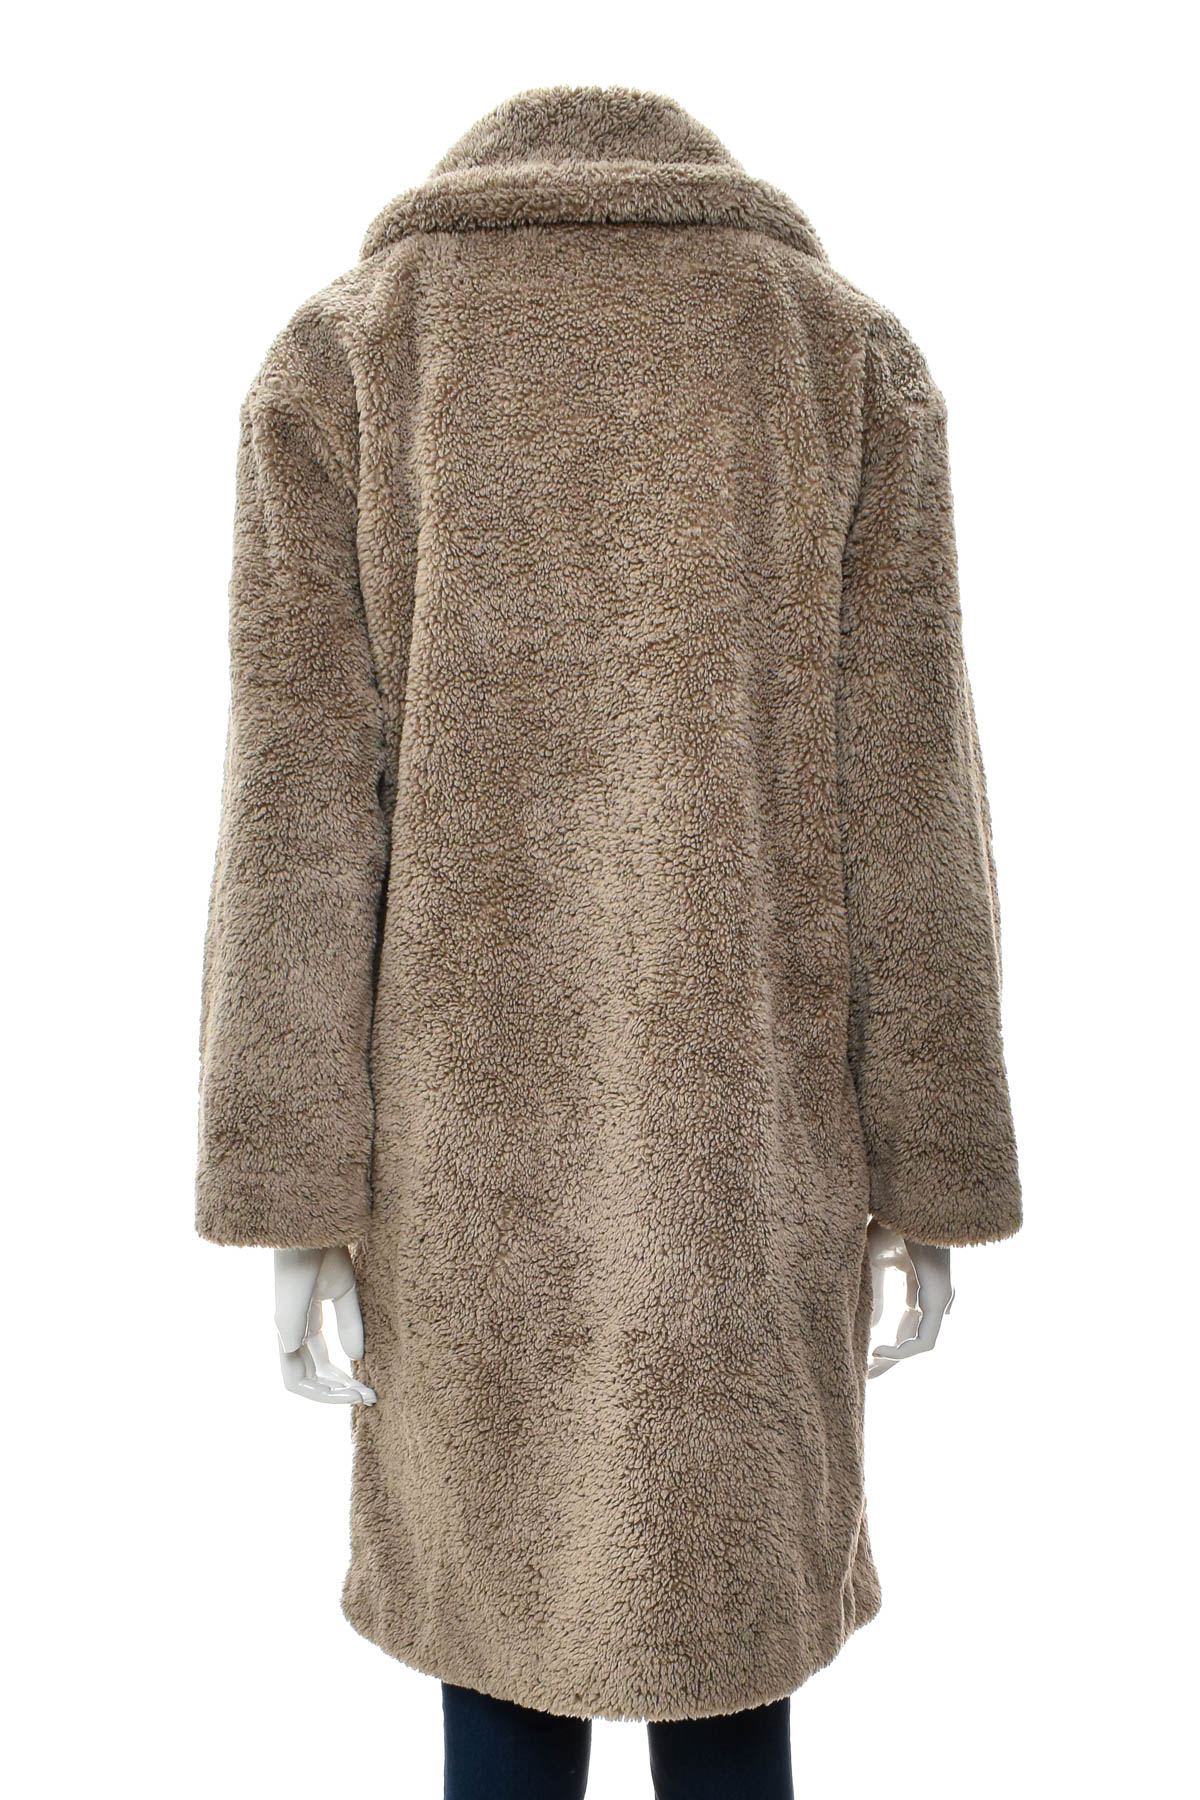 Women's coat - Anko - 1